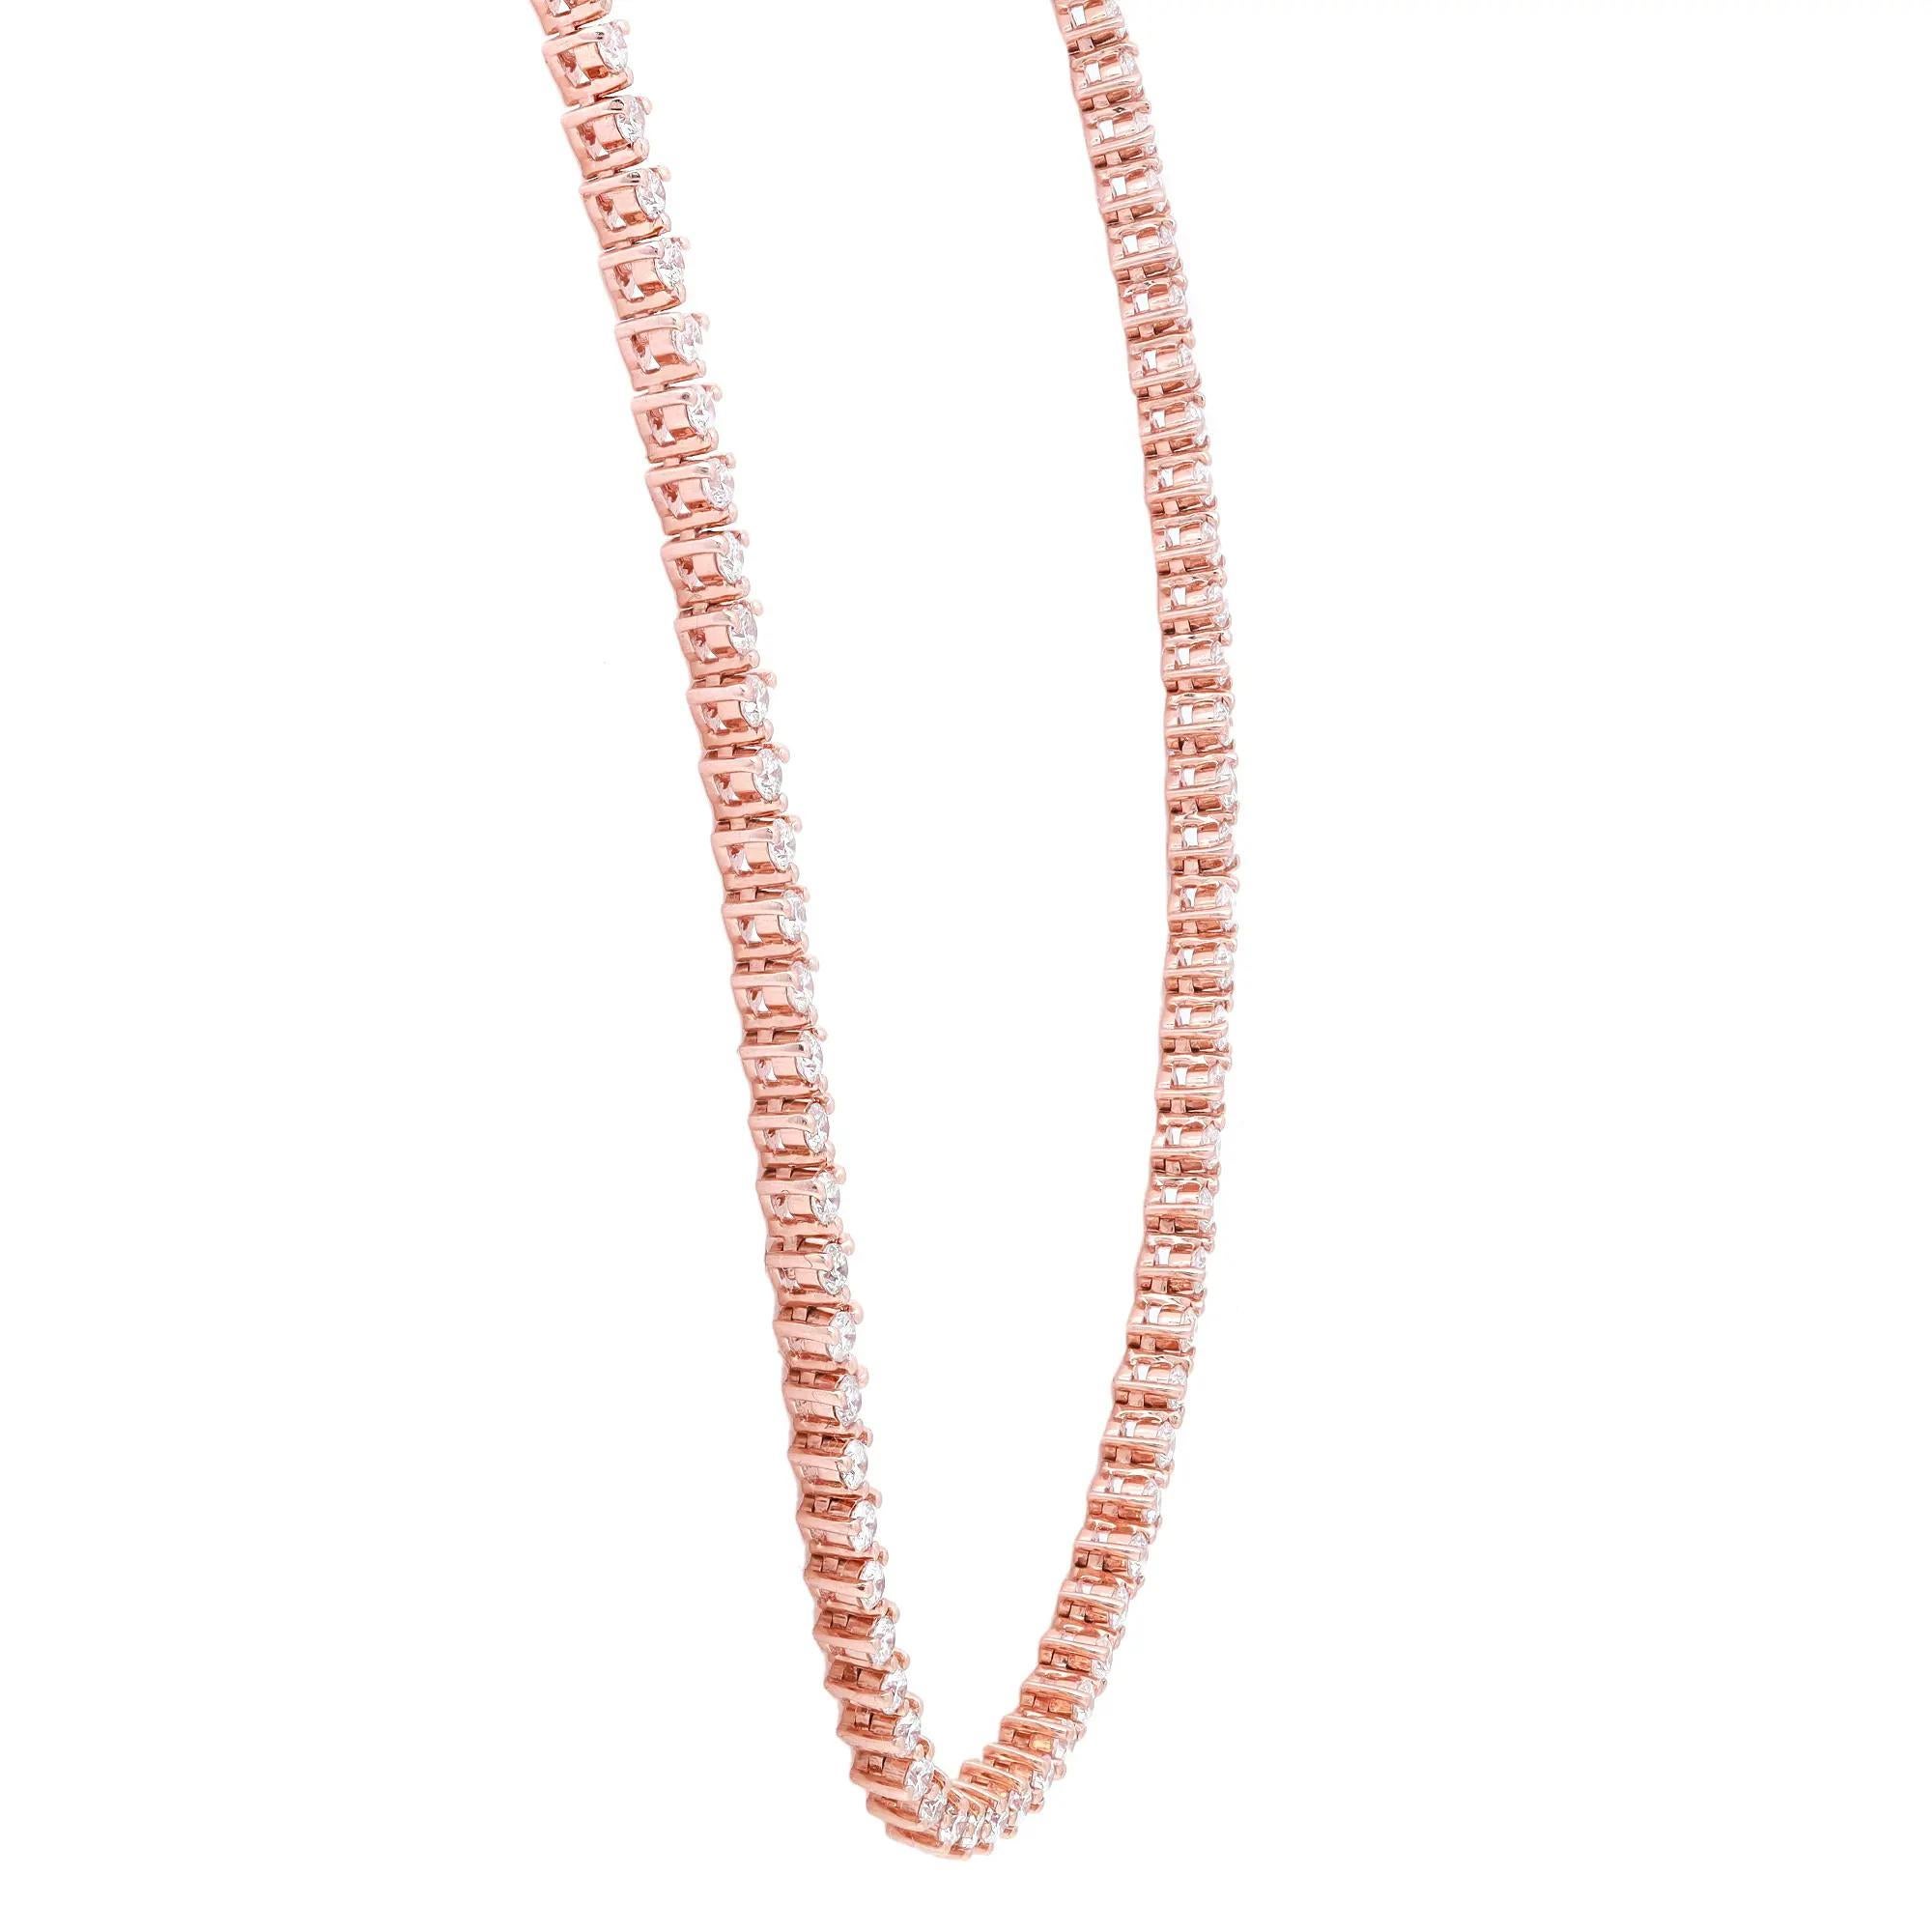 Diese luxuriöse Tennis-Halskette zeichnet sich durch 204 schillernde runde Diamanten im Brillantschliff aus, die in drei Zacken eingefasst sind. Wunderschön handgefertigt aus feinem 18-karätigem Roségold. Gesamtgewicht der Diamanten: 4,87 Karat. Ein